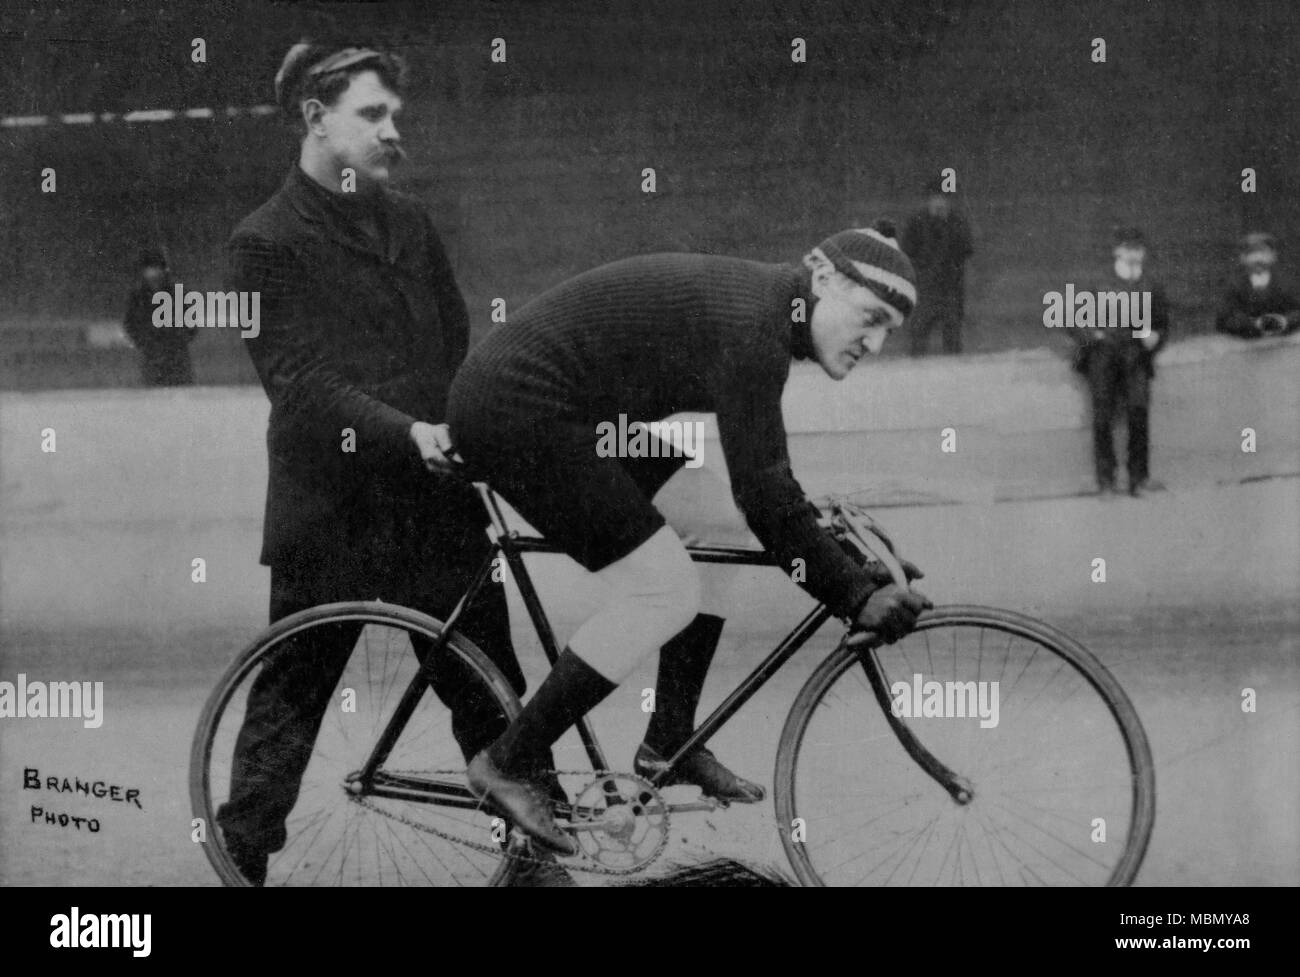 Ritratto del ciclista americano Frank Kramer ( 1880 - 1958 ) - Fotografia di Louis Branger ( 1874 - 1950 ) Foto Stock